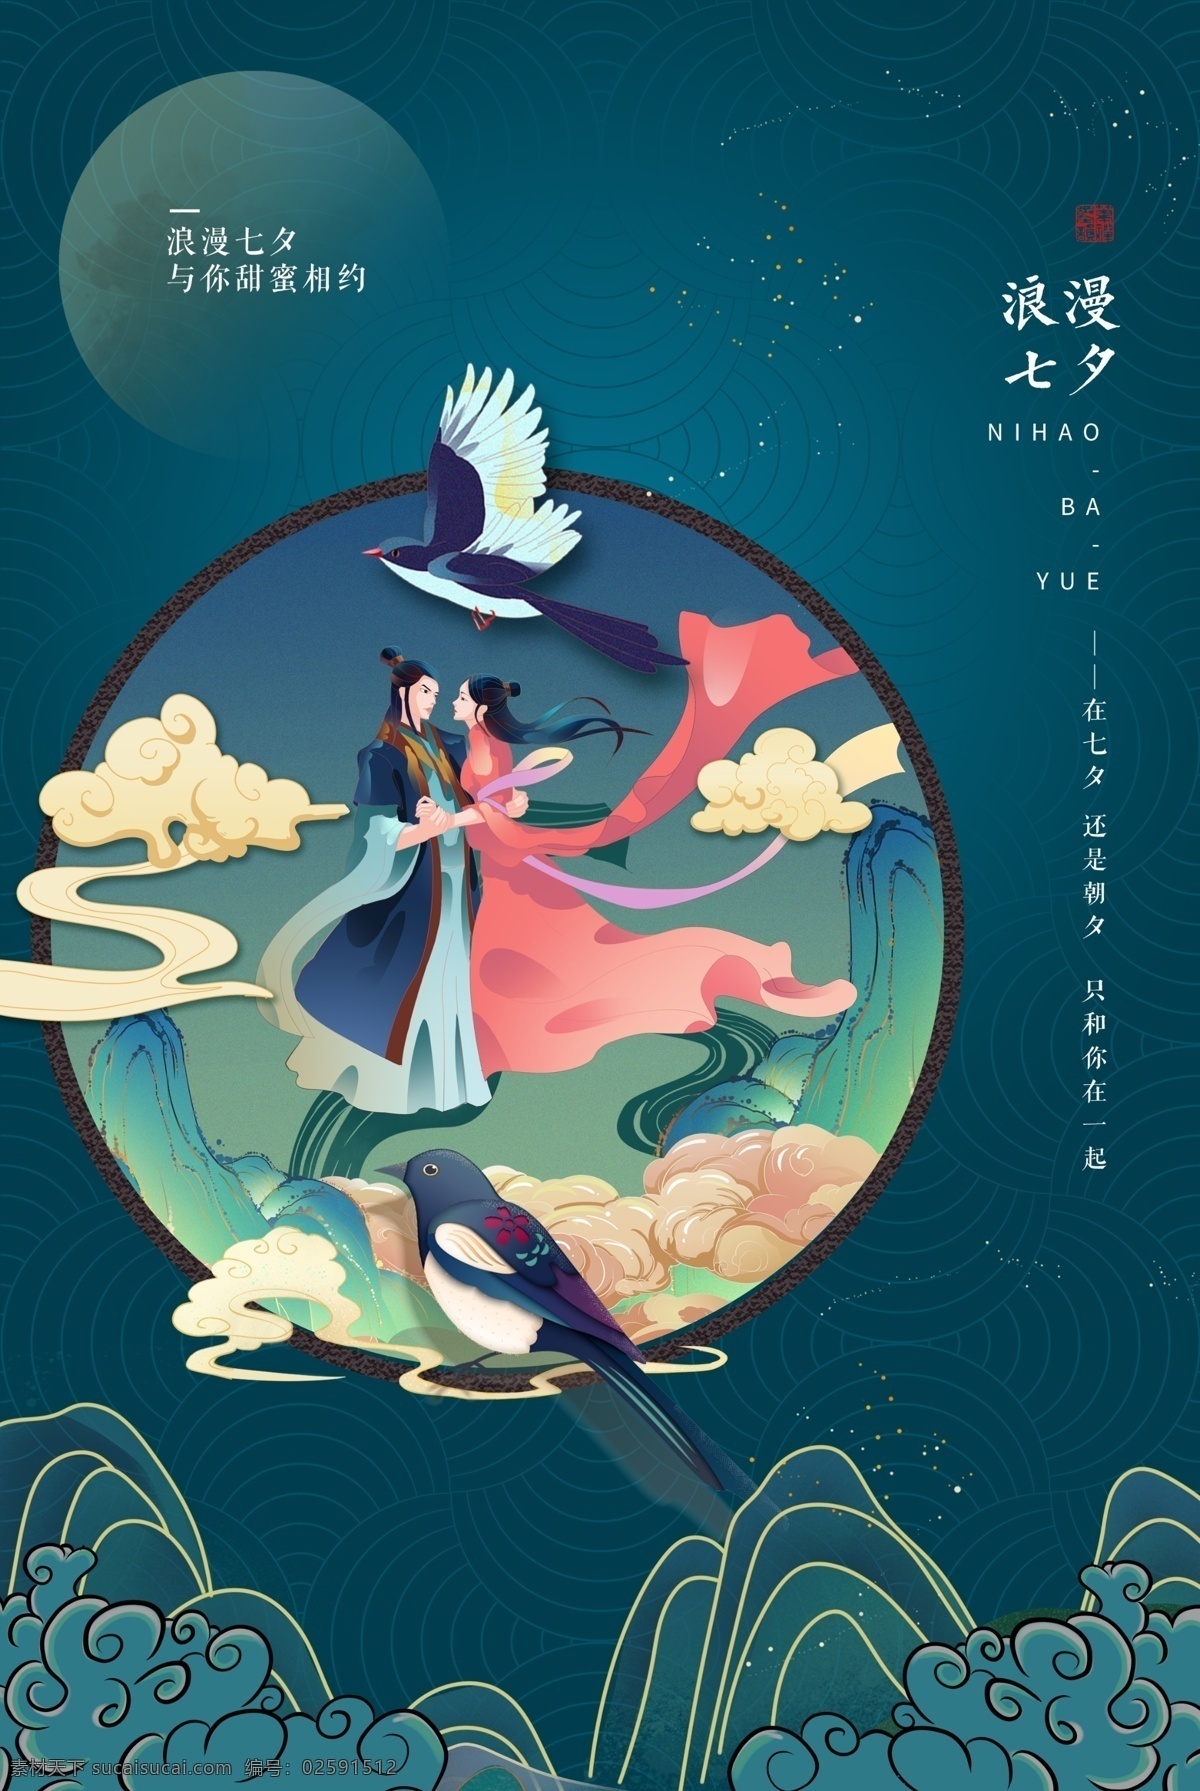 七夕 节日 传统 宣传海报 宣传 海报 传统节日